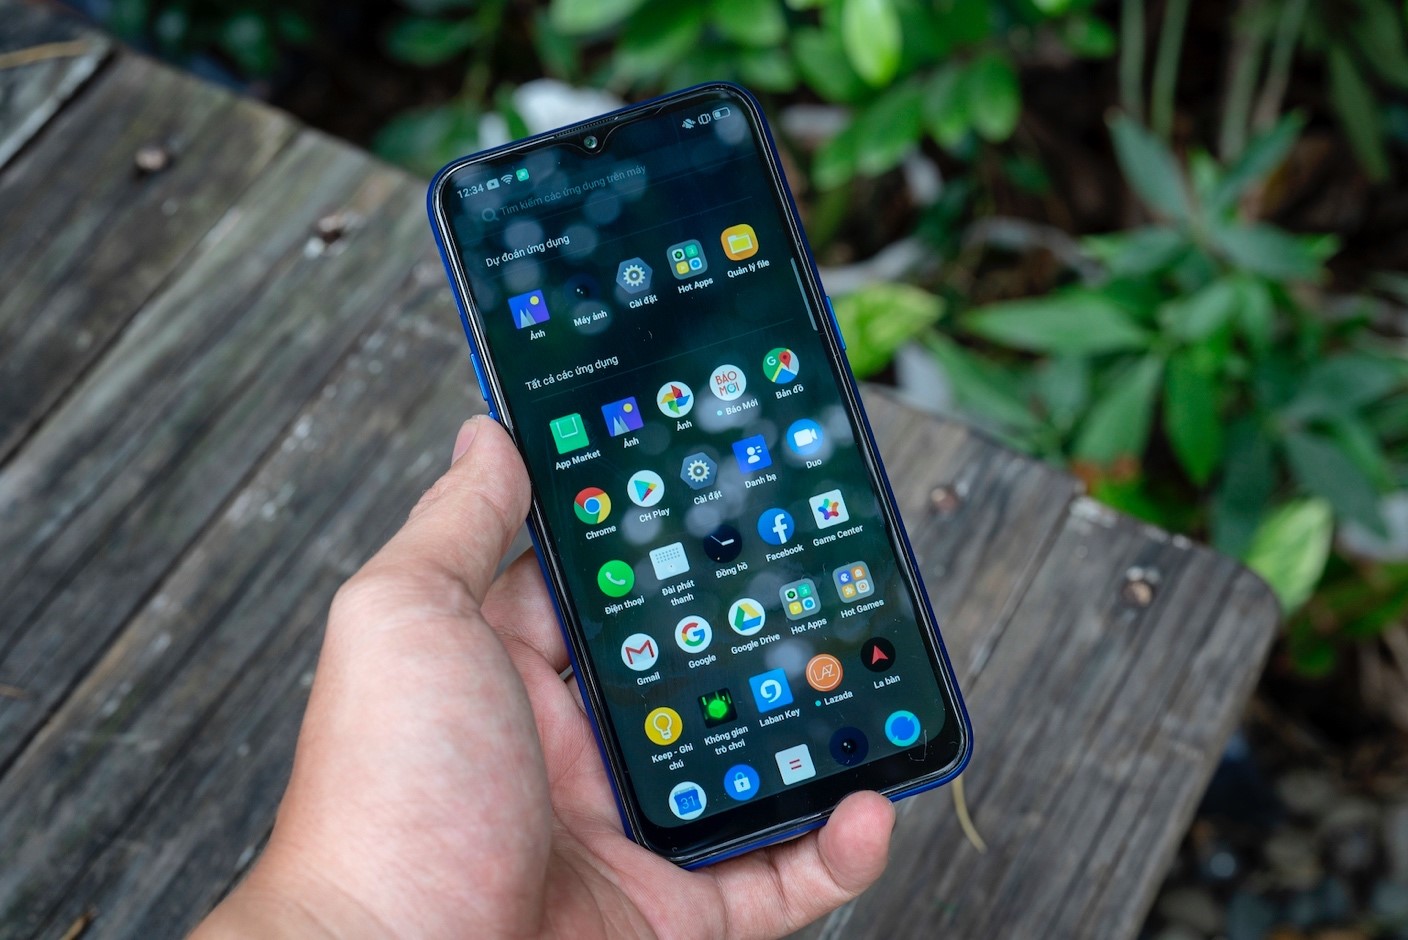 Realme C2 phiên bản nâng cấp được bán độc quyền tại hệ thống Thế Giới Di Động từ ngày 30/08/2019, giá 2,990,000 đồng